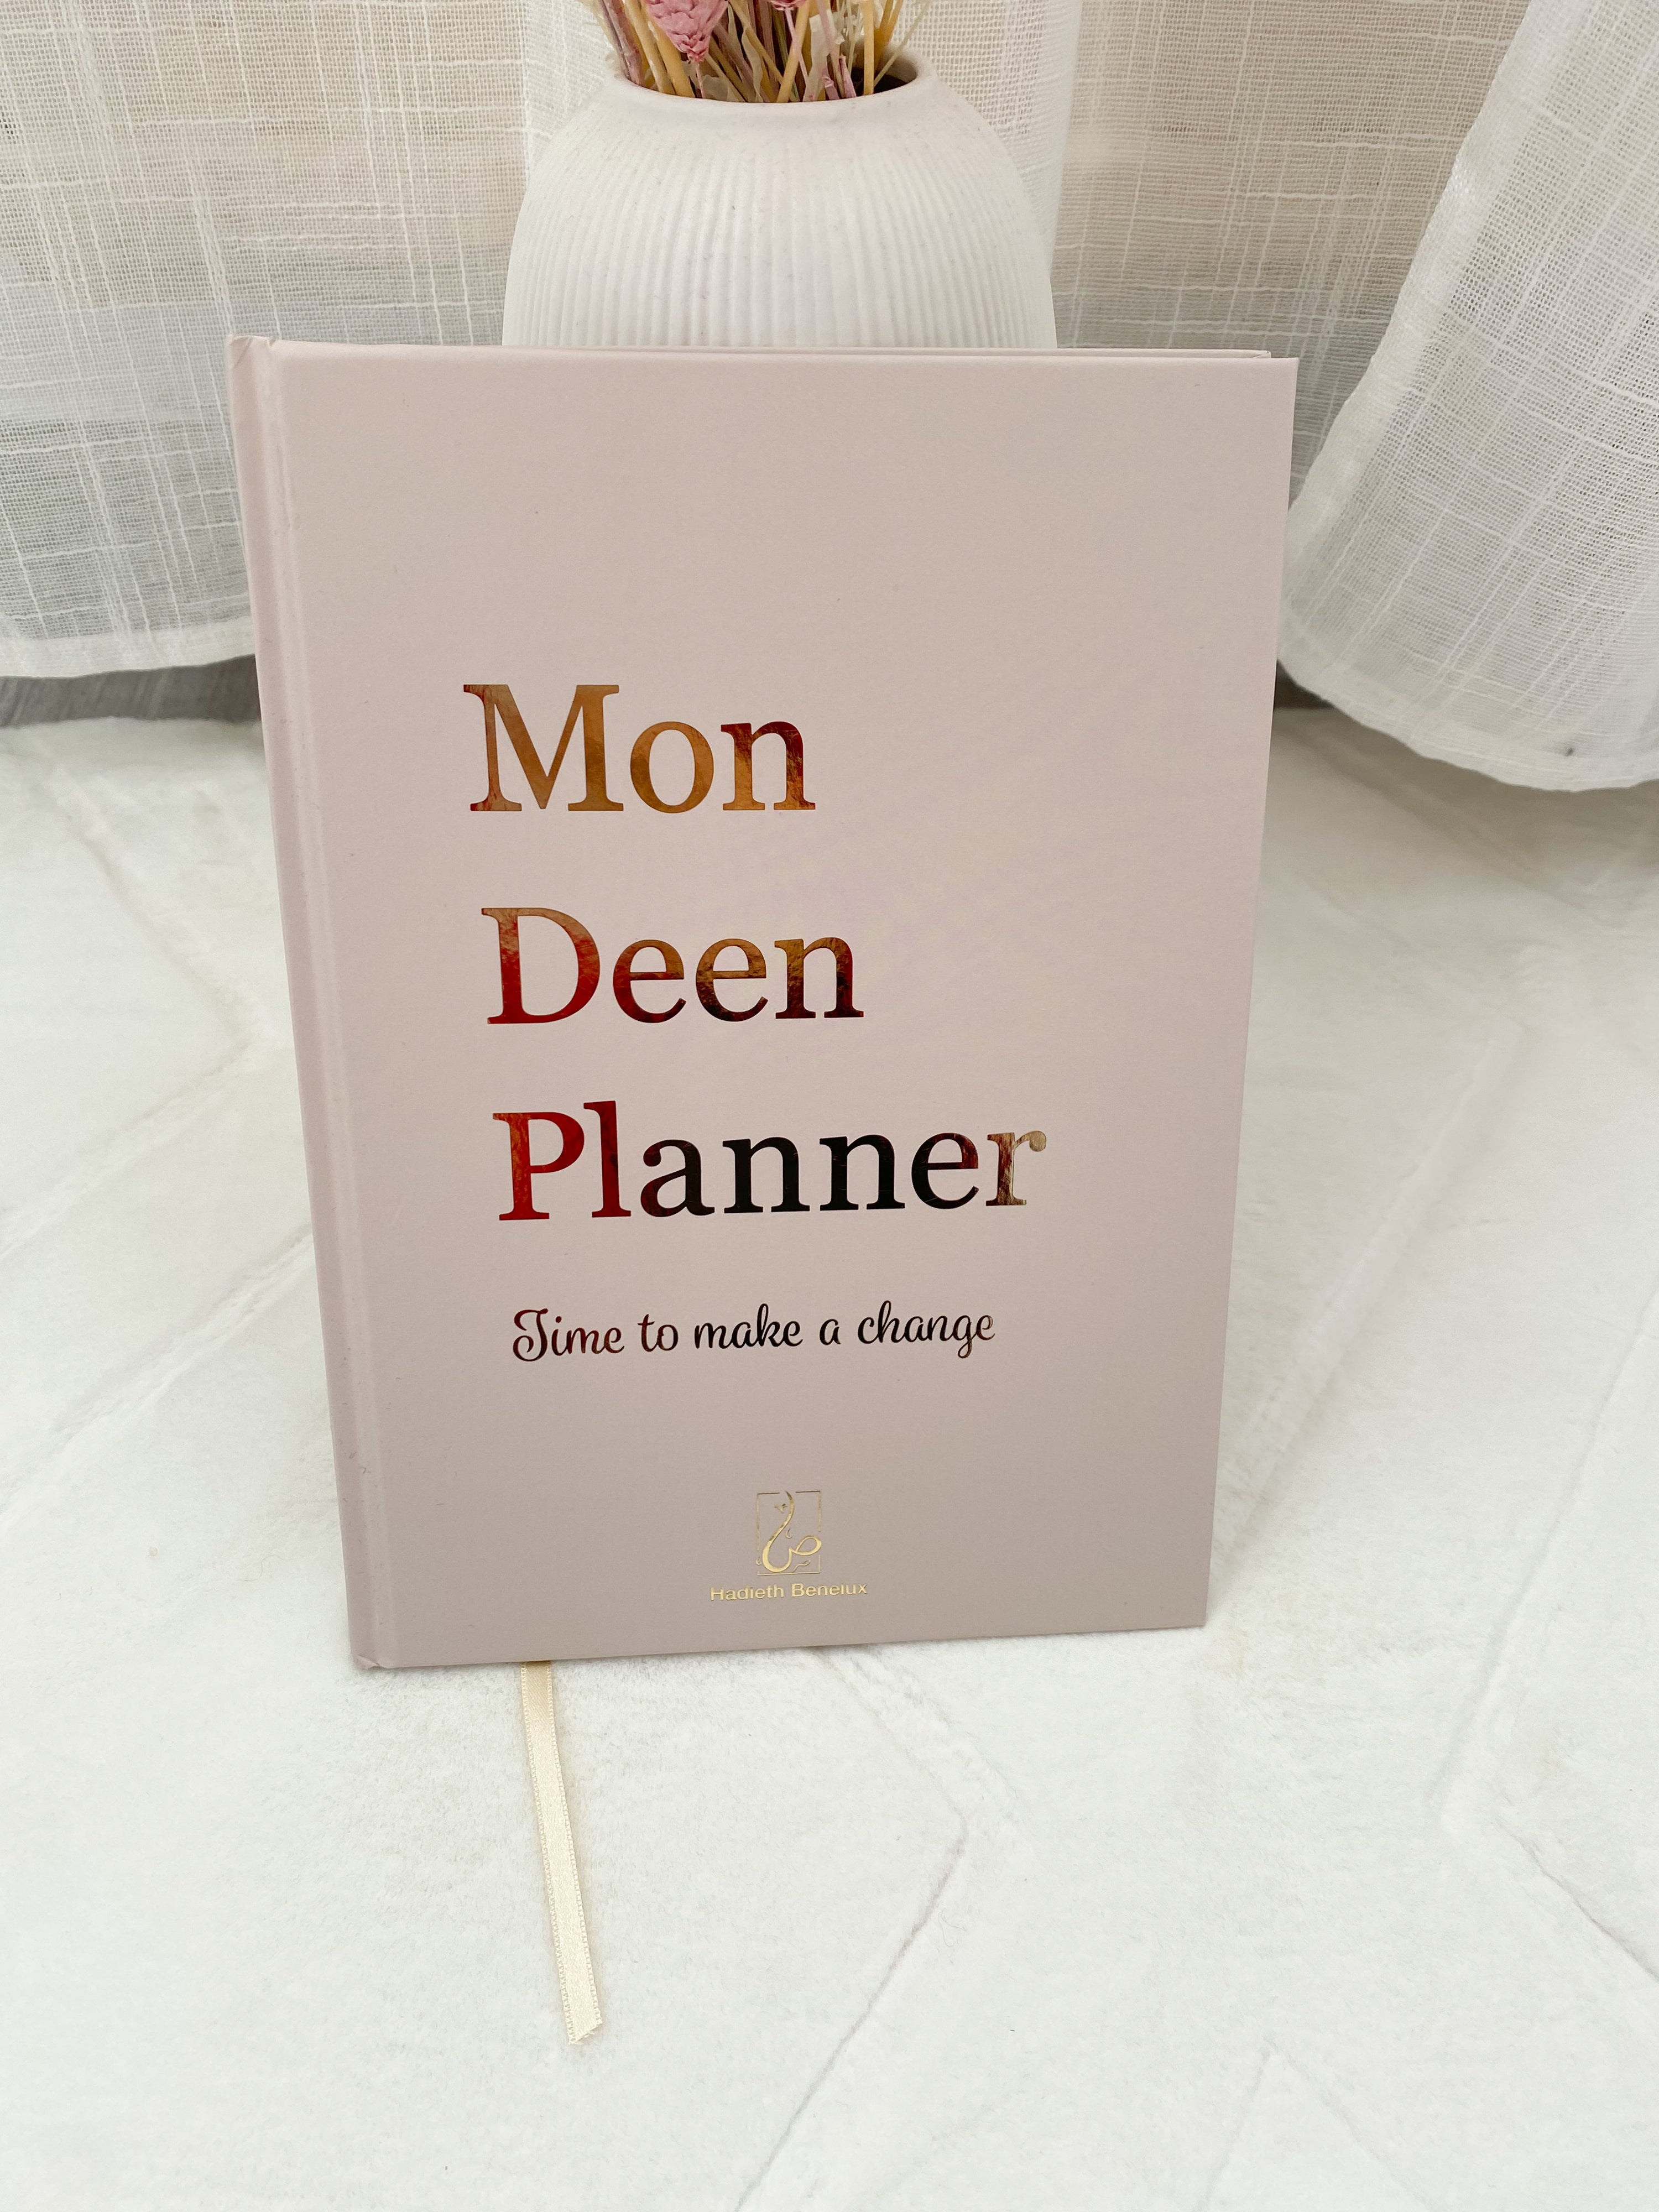 Livre deen planner en français